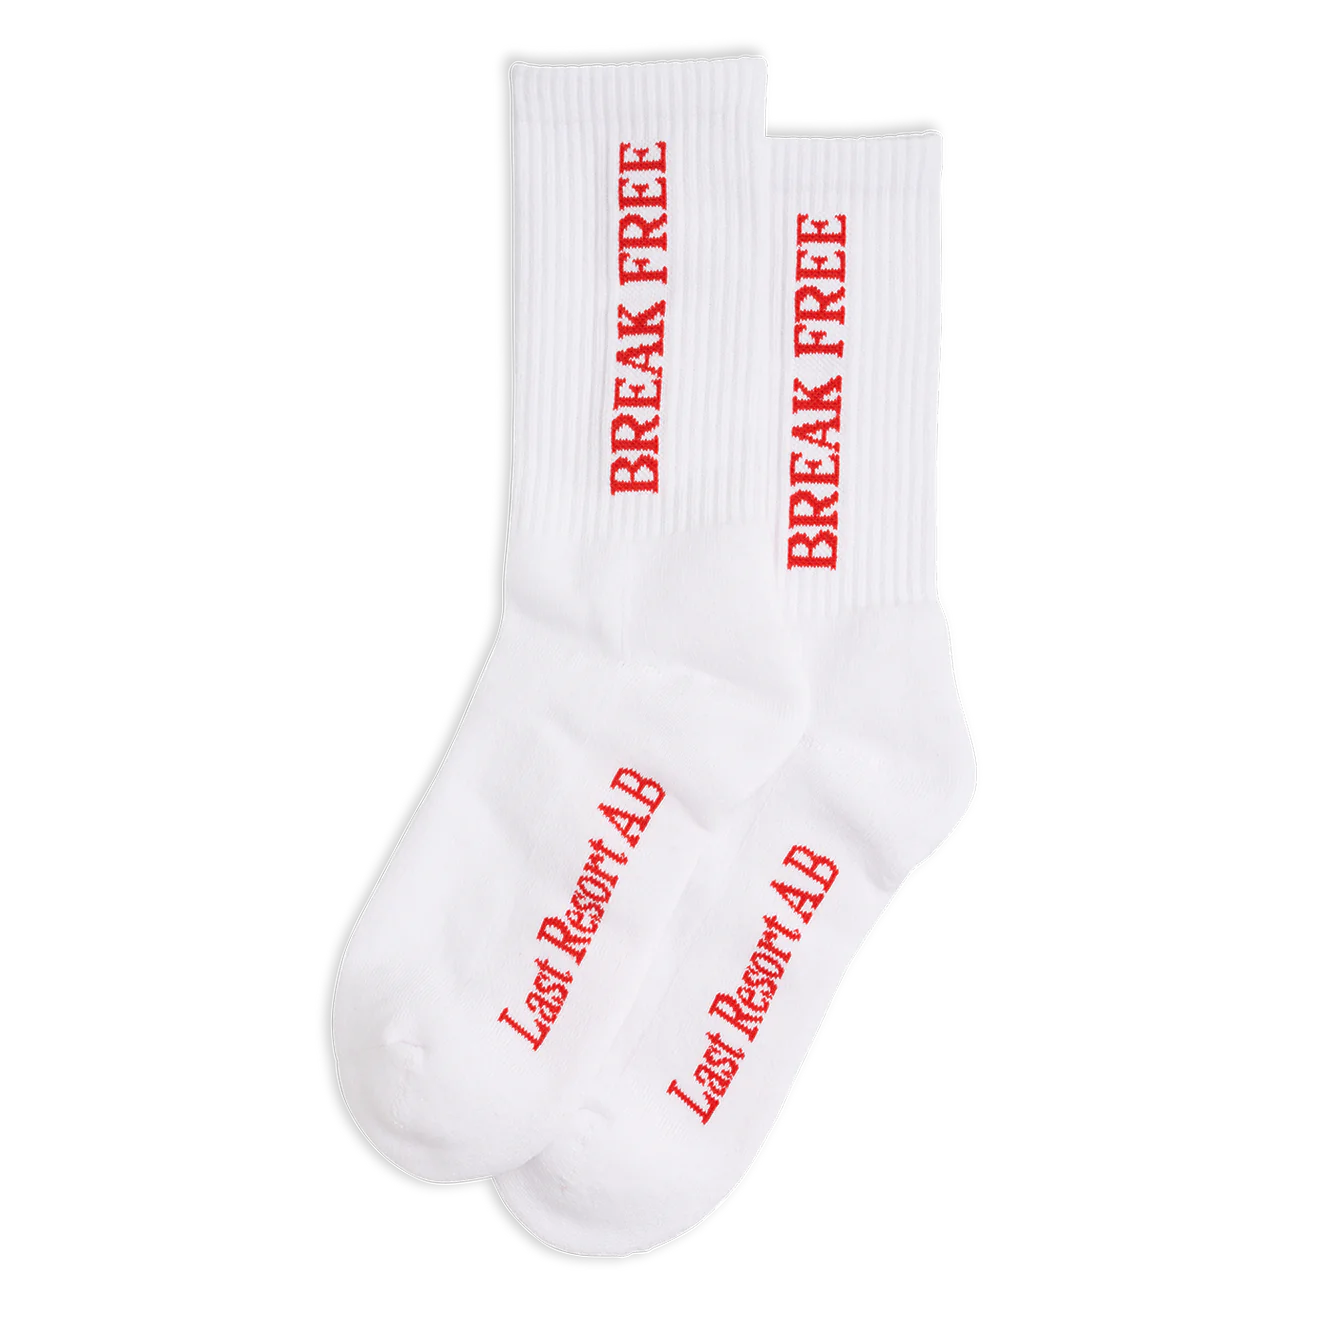 Last Resort AB - Break Free Socks - White (3 Pack)